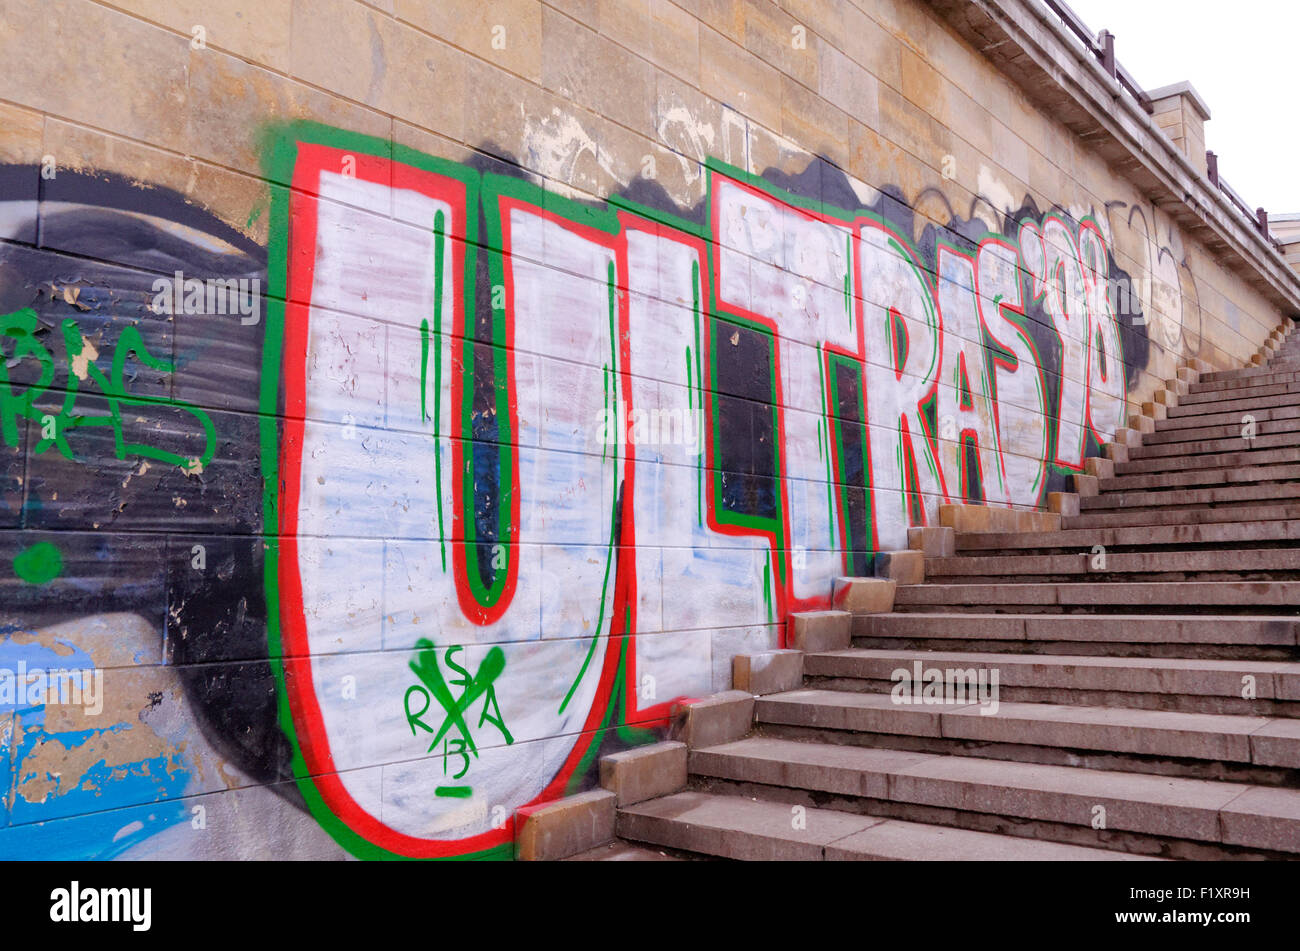 Ultras russo - graffiti promuovendo la violenta i tifosi di calcio in Russia, Kazan, Tatarstan Foto Stock